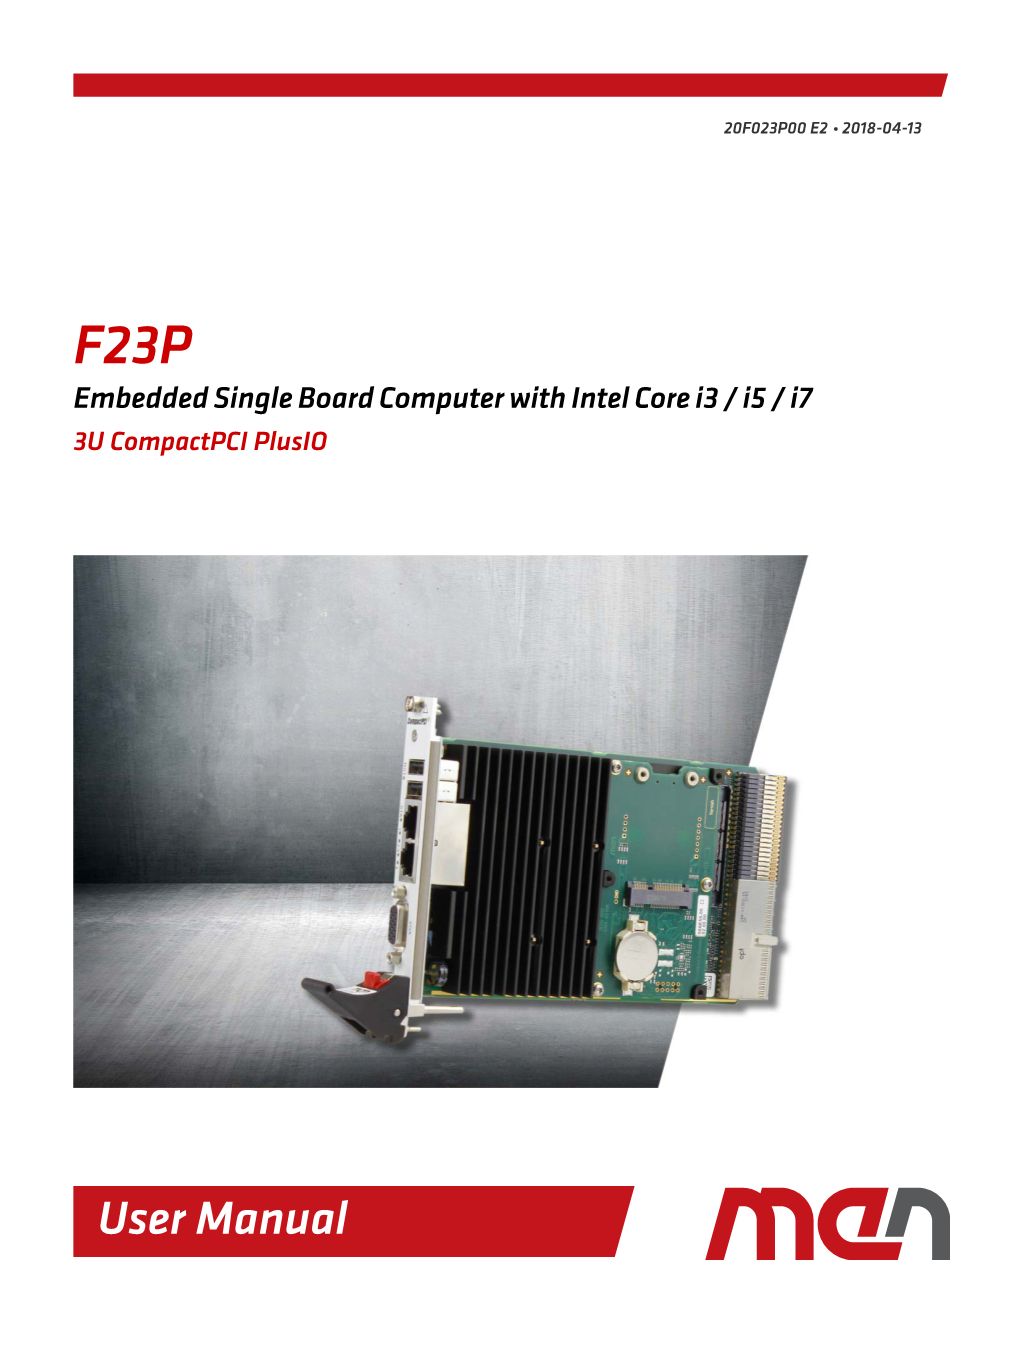 F23P User Manual